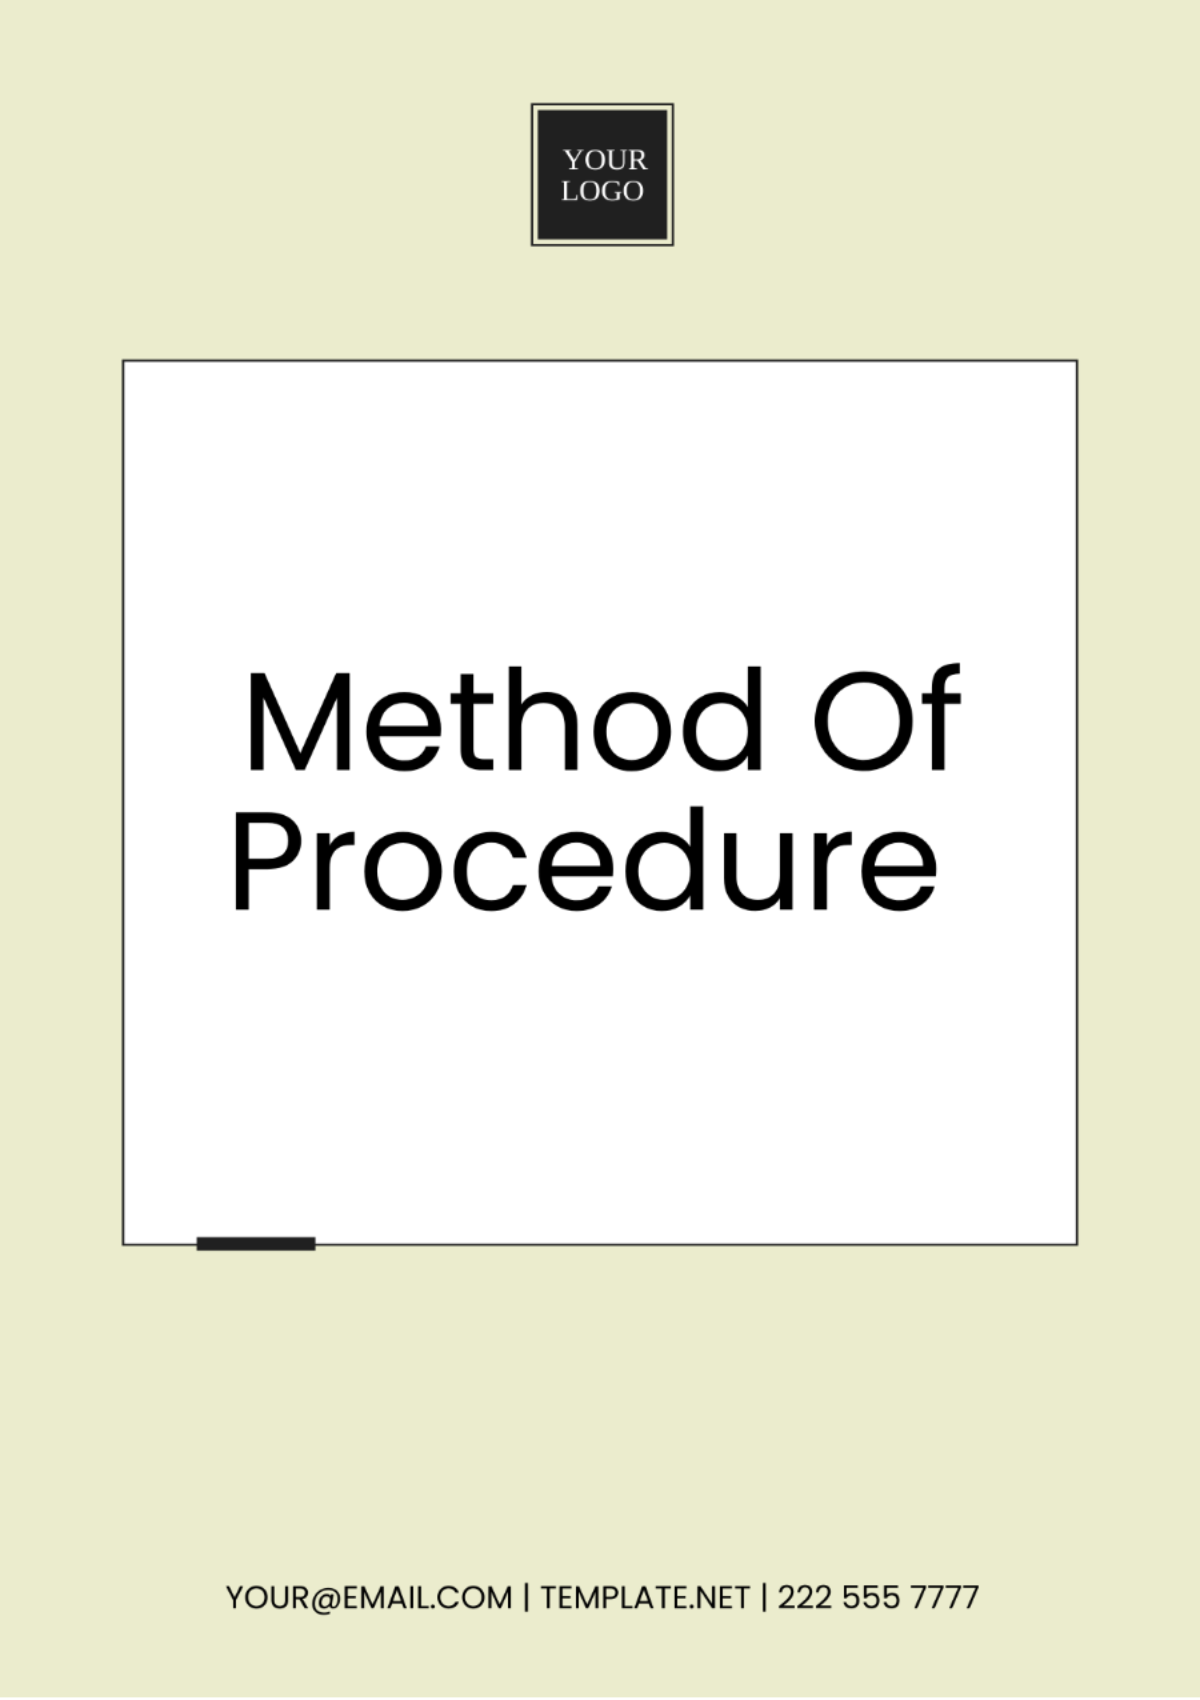 Method Of Procedure Template